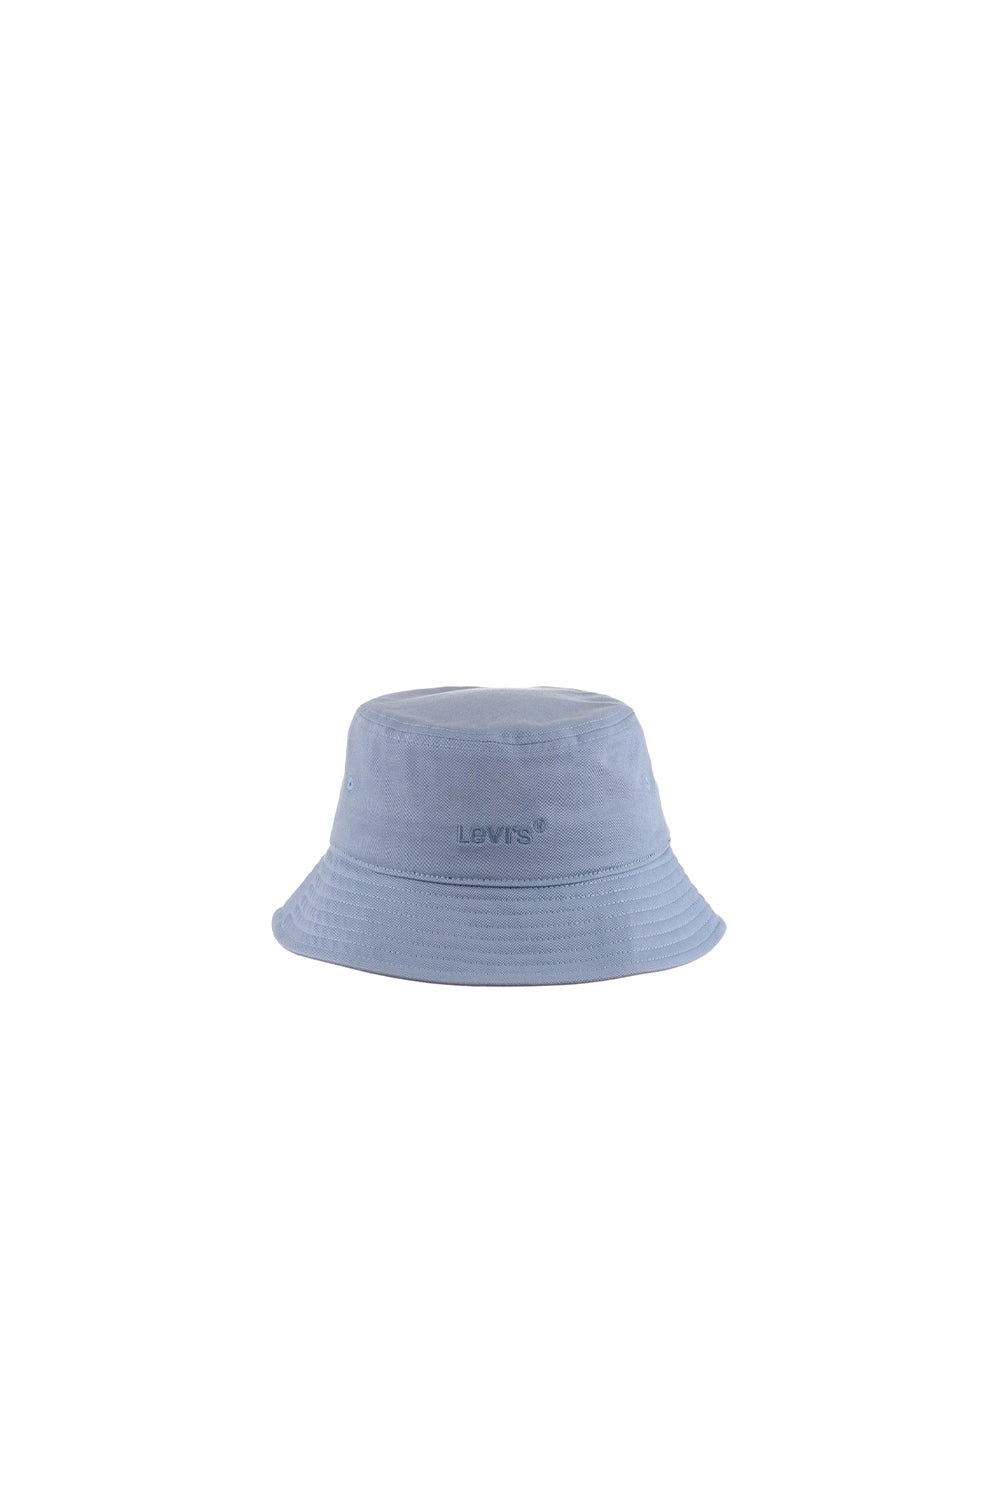 Levi's Wordmark Bucket Hat Pale Blue